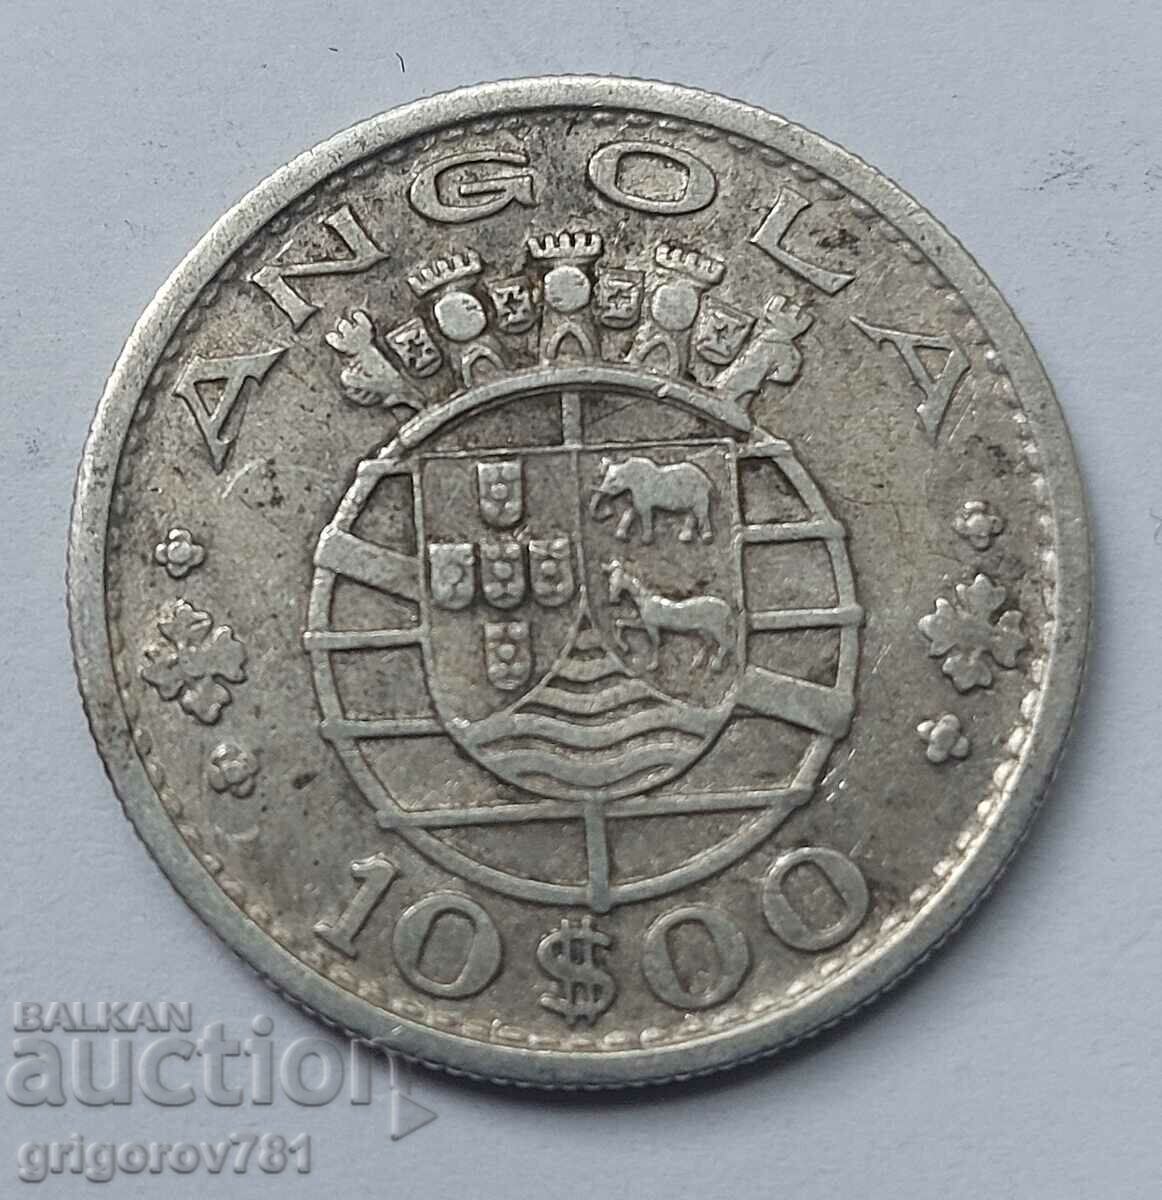 Ασημένιο 10 Escudo Angola 1952 - Ασημένιο νόμισμα #12